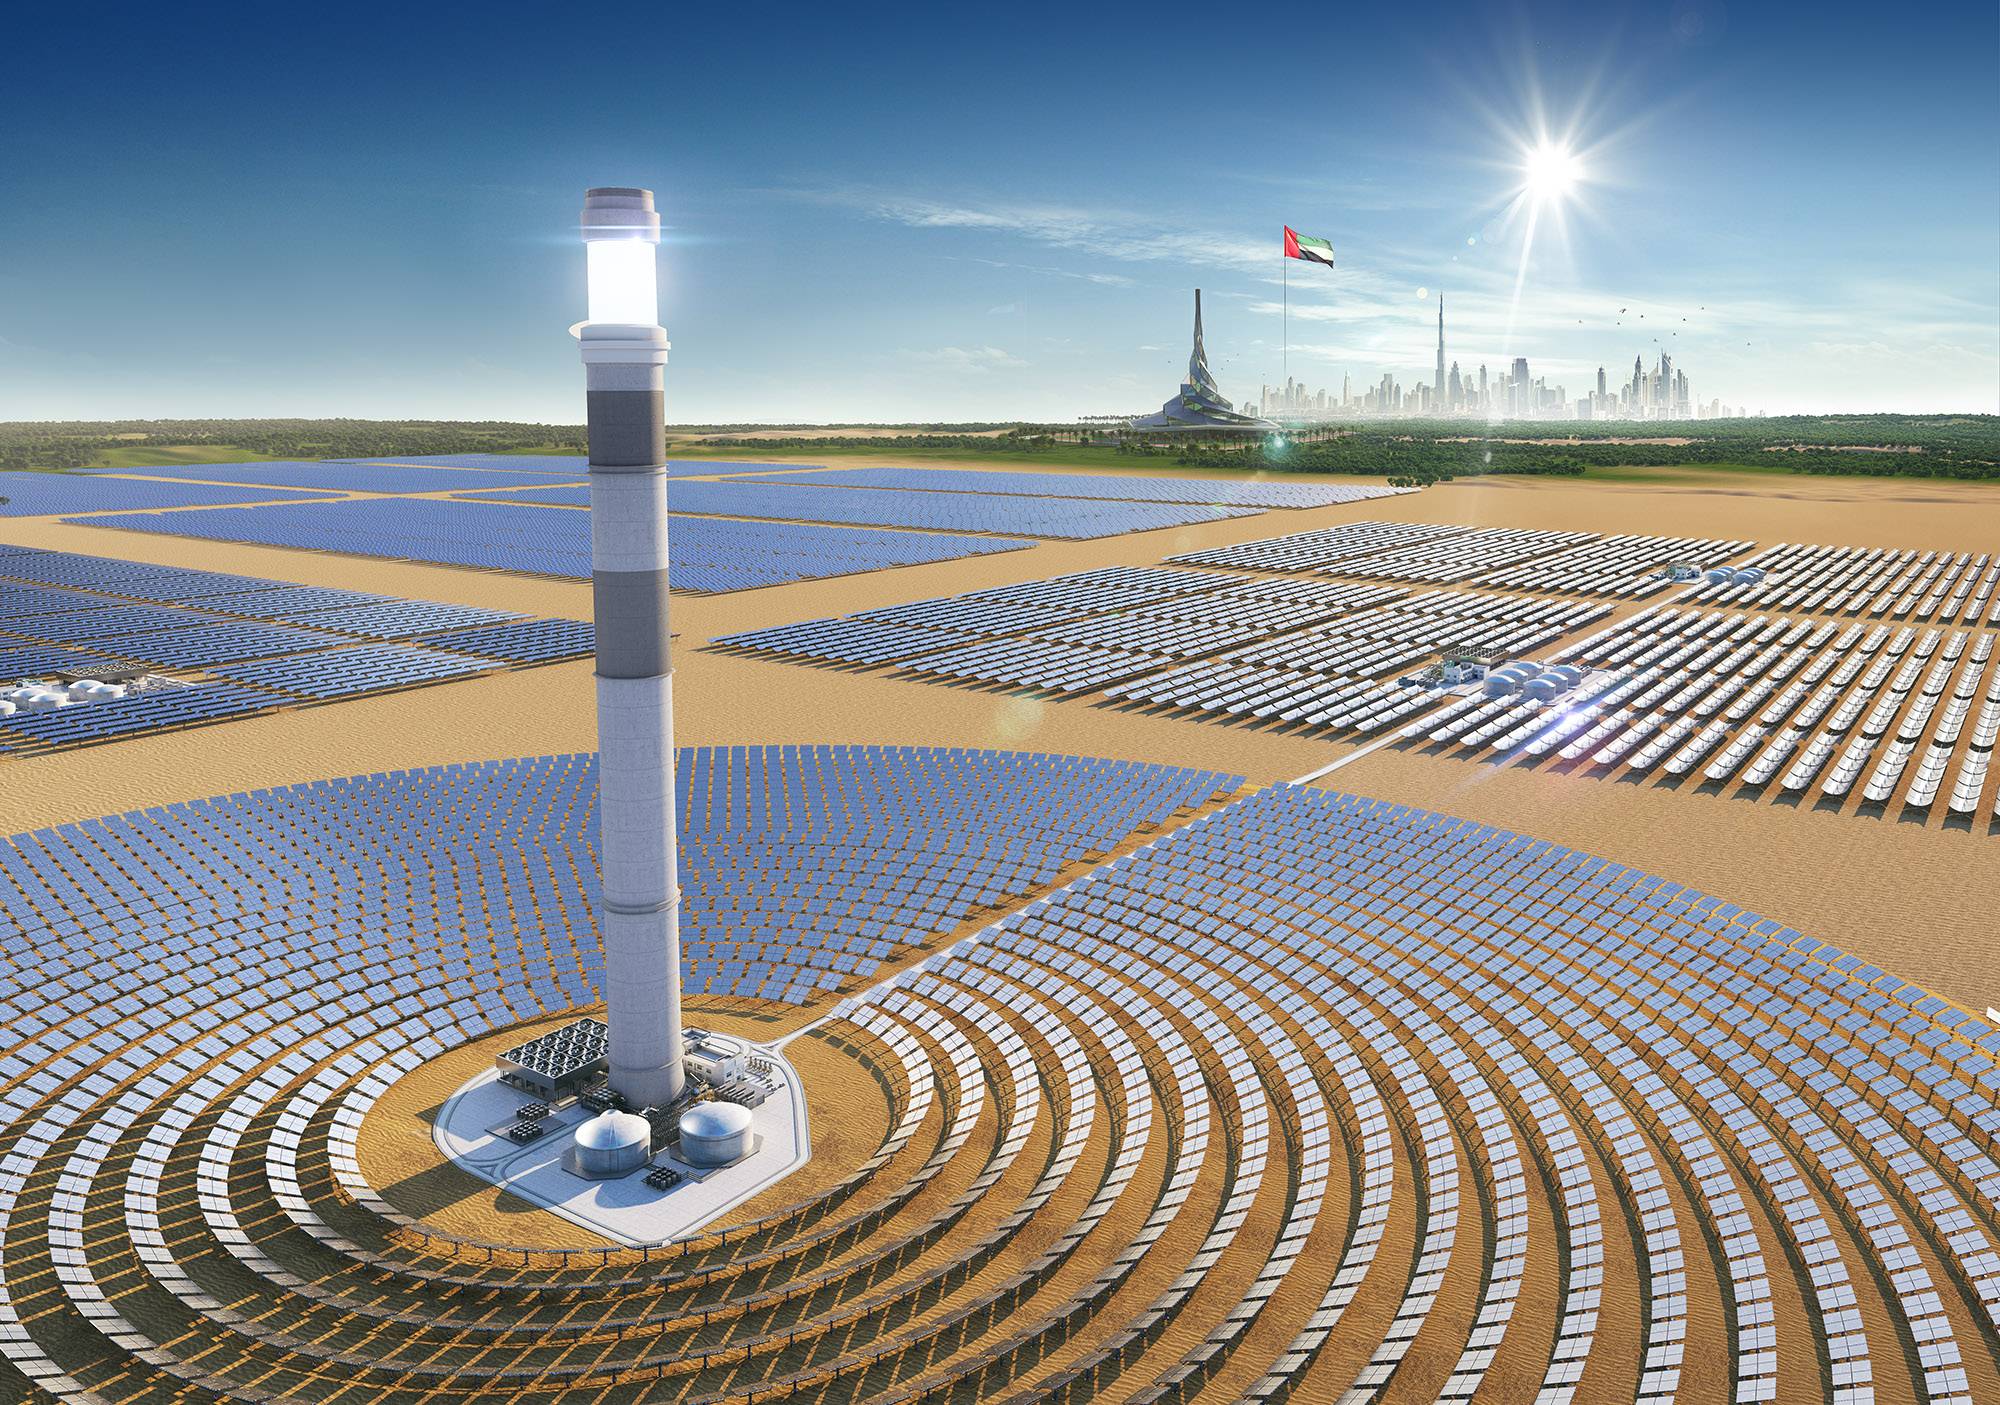 Mohammed bin Rashid al Maktoum Solar Park